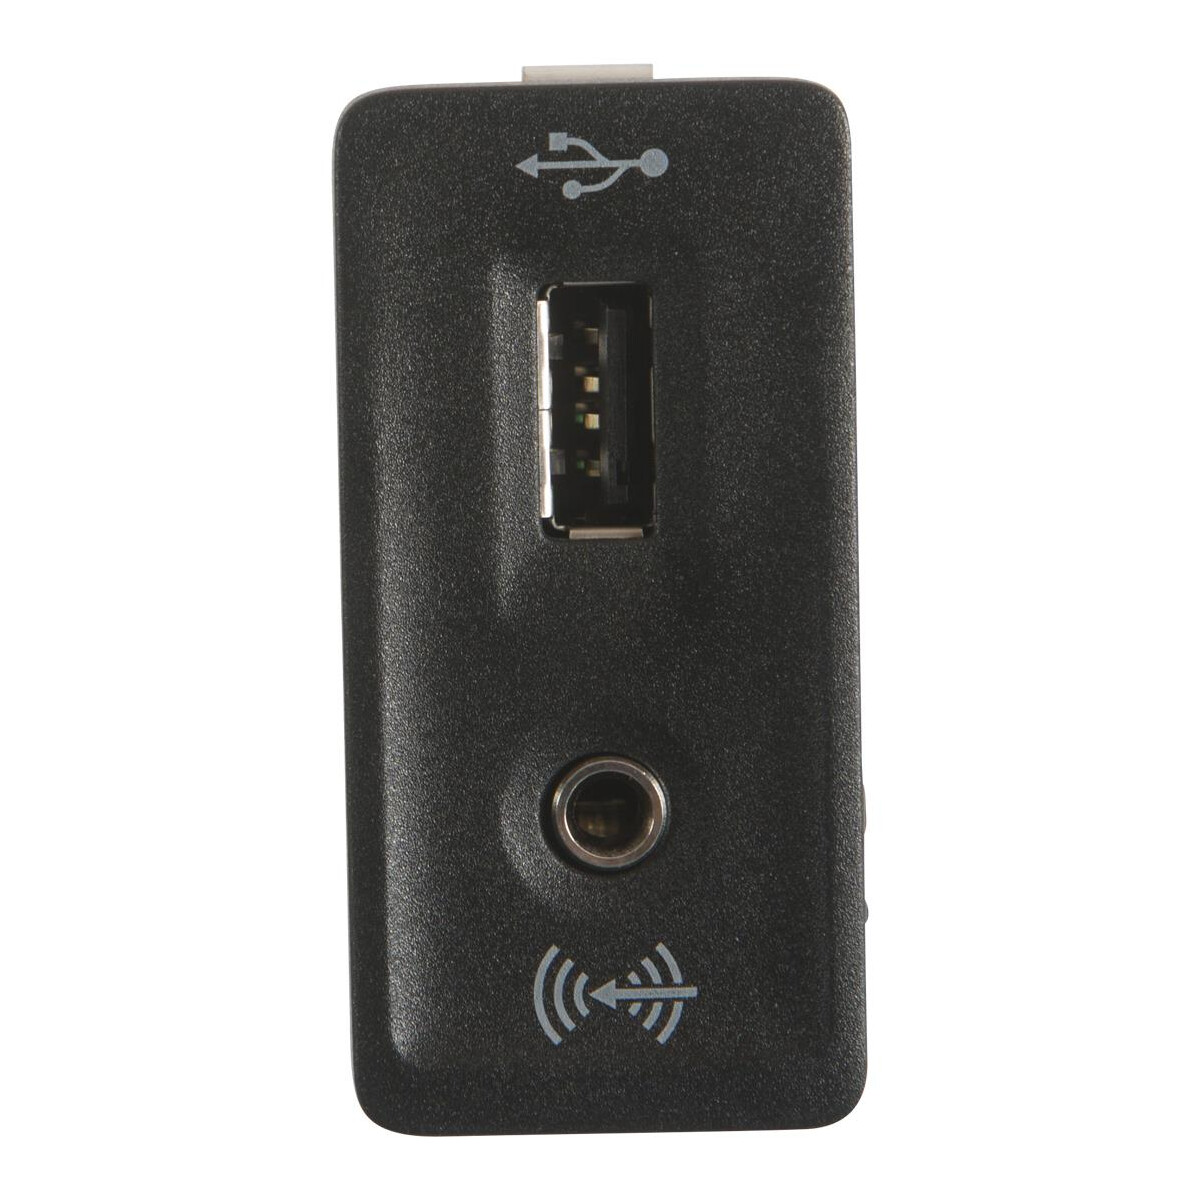 T5 T6 USB und AUX Buchse für MIB Radio / Navigation Verglnr